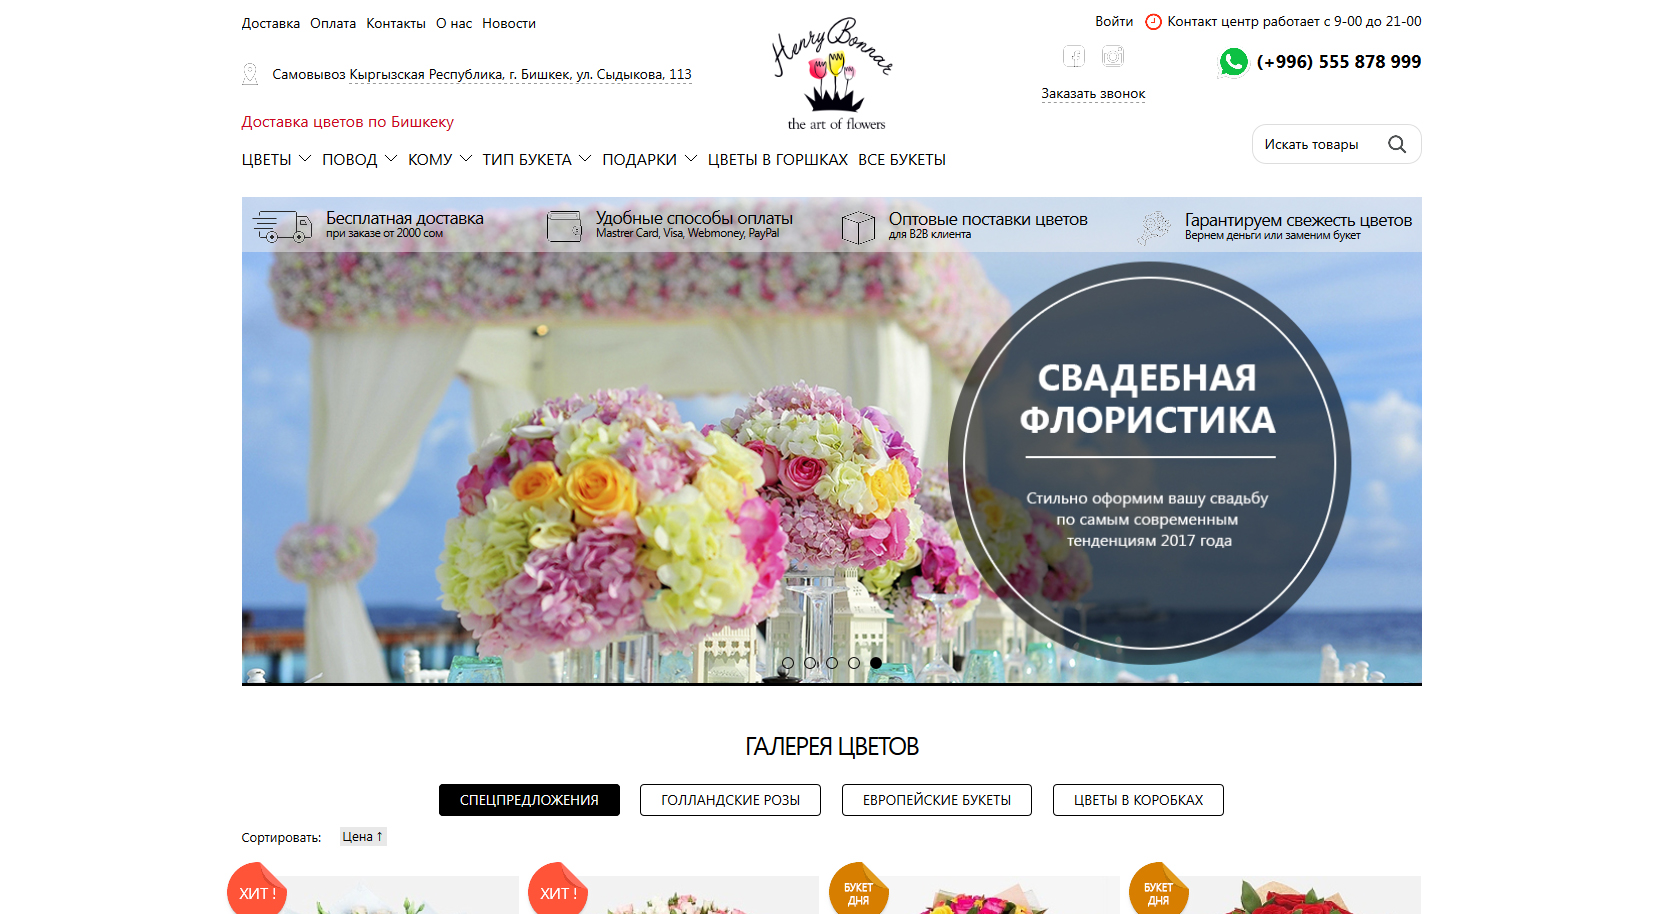 Интернет-магазин по доставке цветов и подарков - Flower.kg